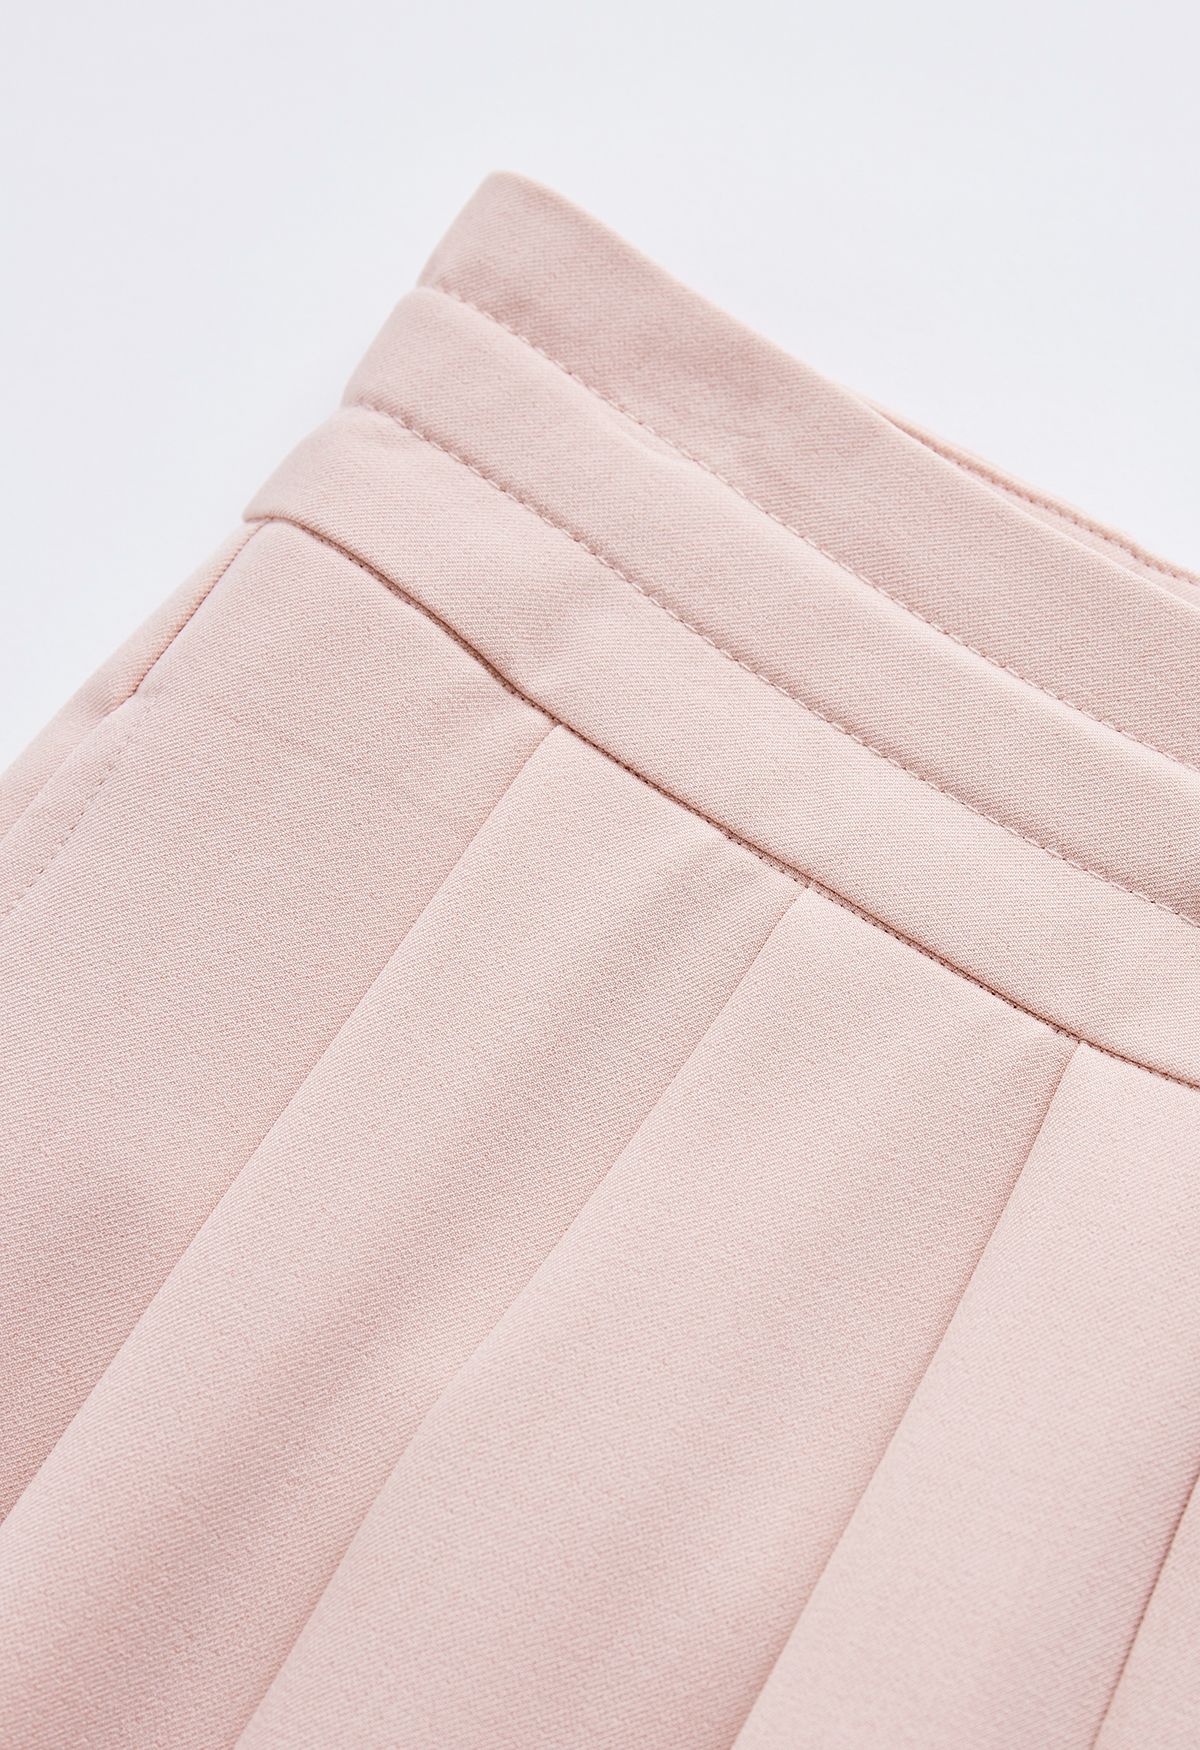 Pantalones de pernera ancha con cordón en la cintura con detalle plisado en rosa